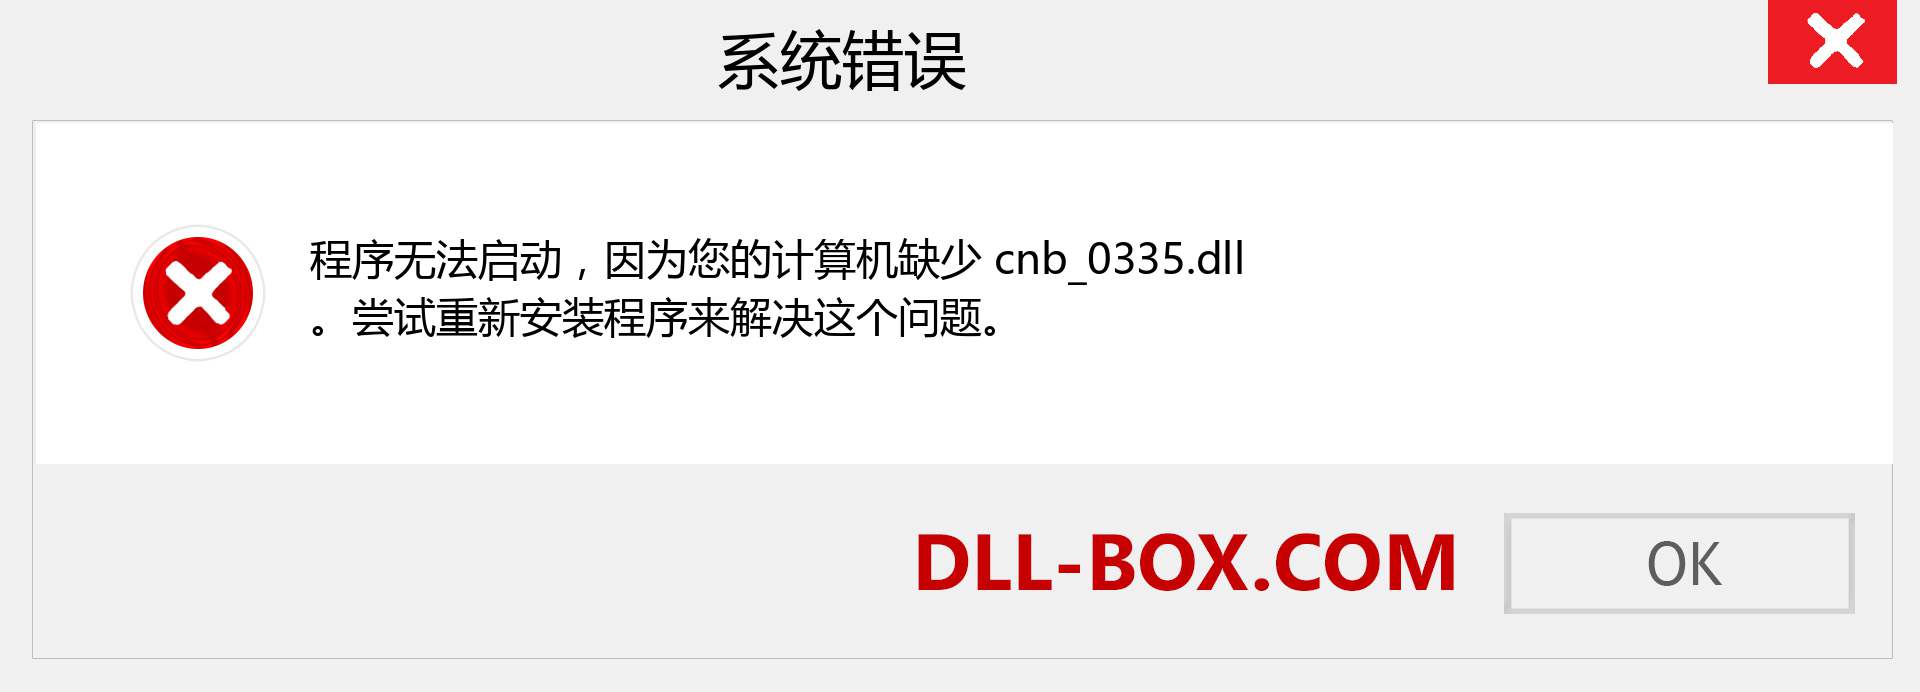 cnb_0335.dll 文件丢失？。 适用于 Windows 7、8、10 的下载 - 修复 Windows、照片、图像上的 cnb_0335 dll 丢失错误